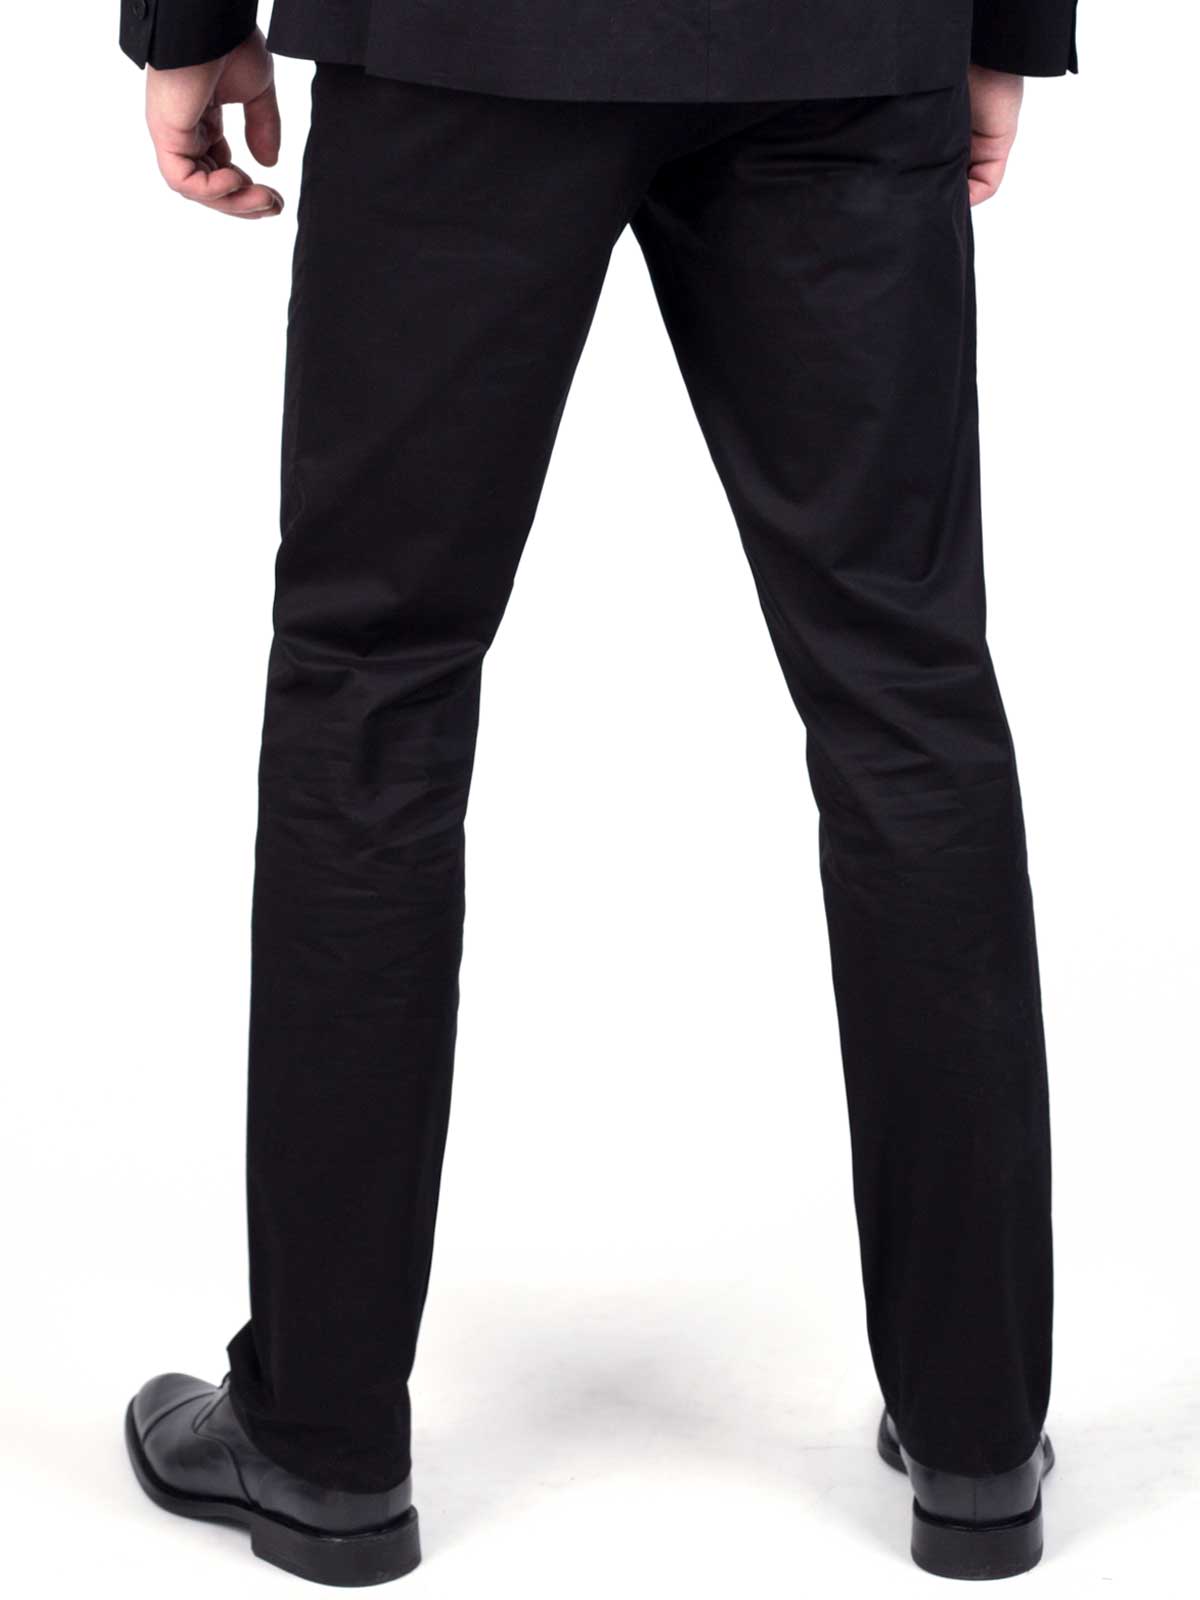 Елегантен черен панталон от памук - 63175 44.00 лв img2